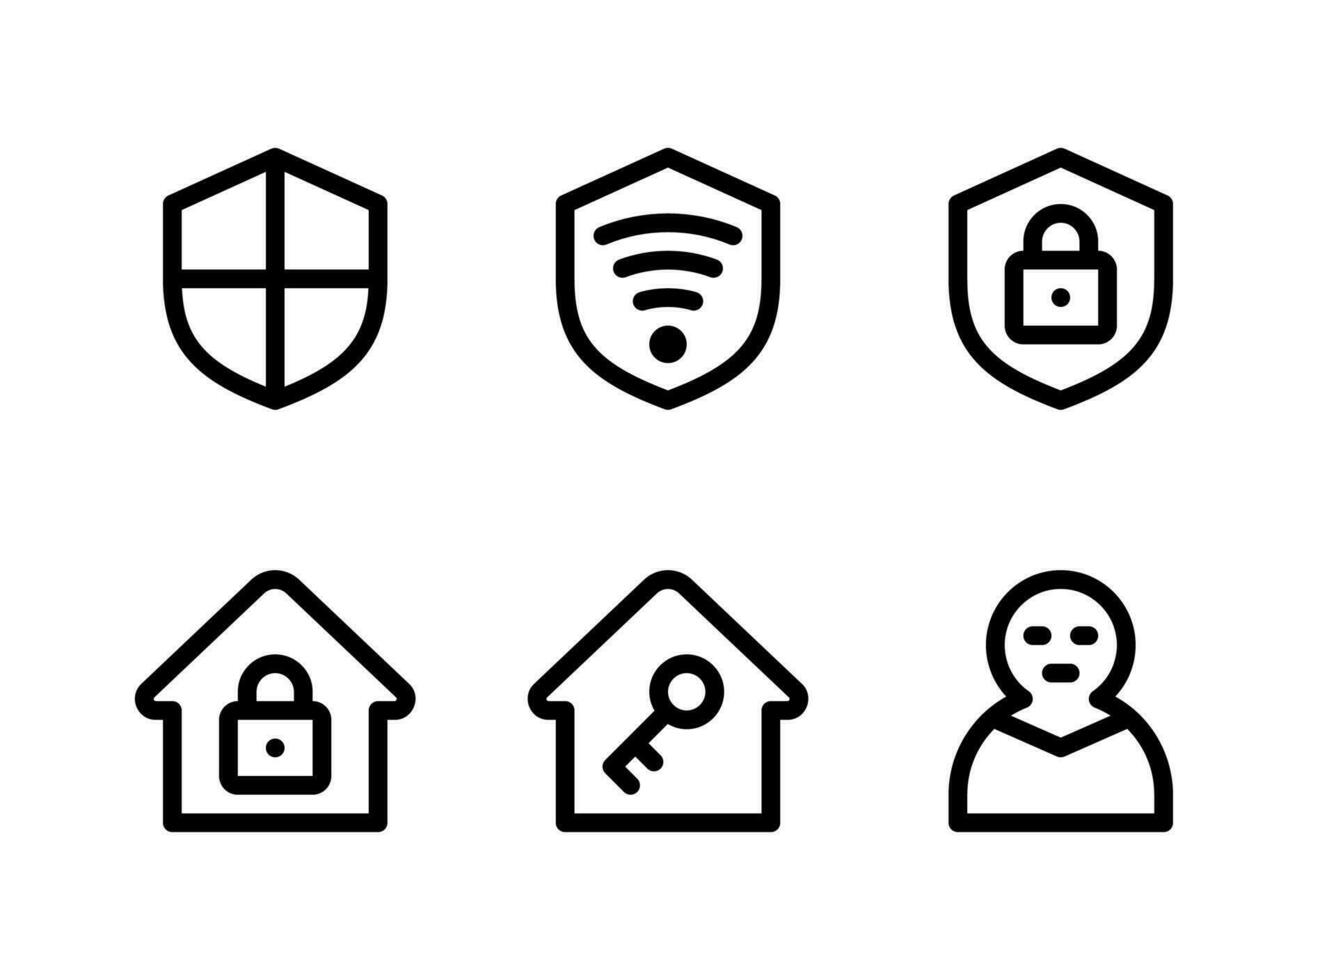 semplice set di icone di linea vettoriale relative alla sicurezza. contiene icone come scudo, wifi sicuro, casa, ladro e altro.